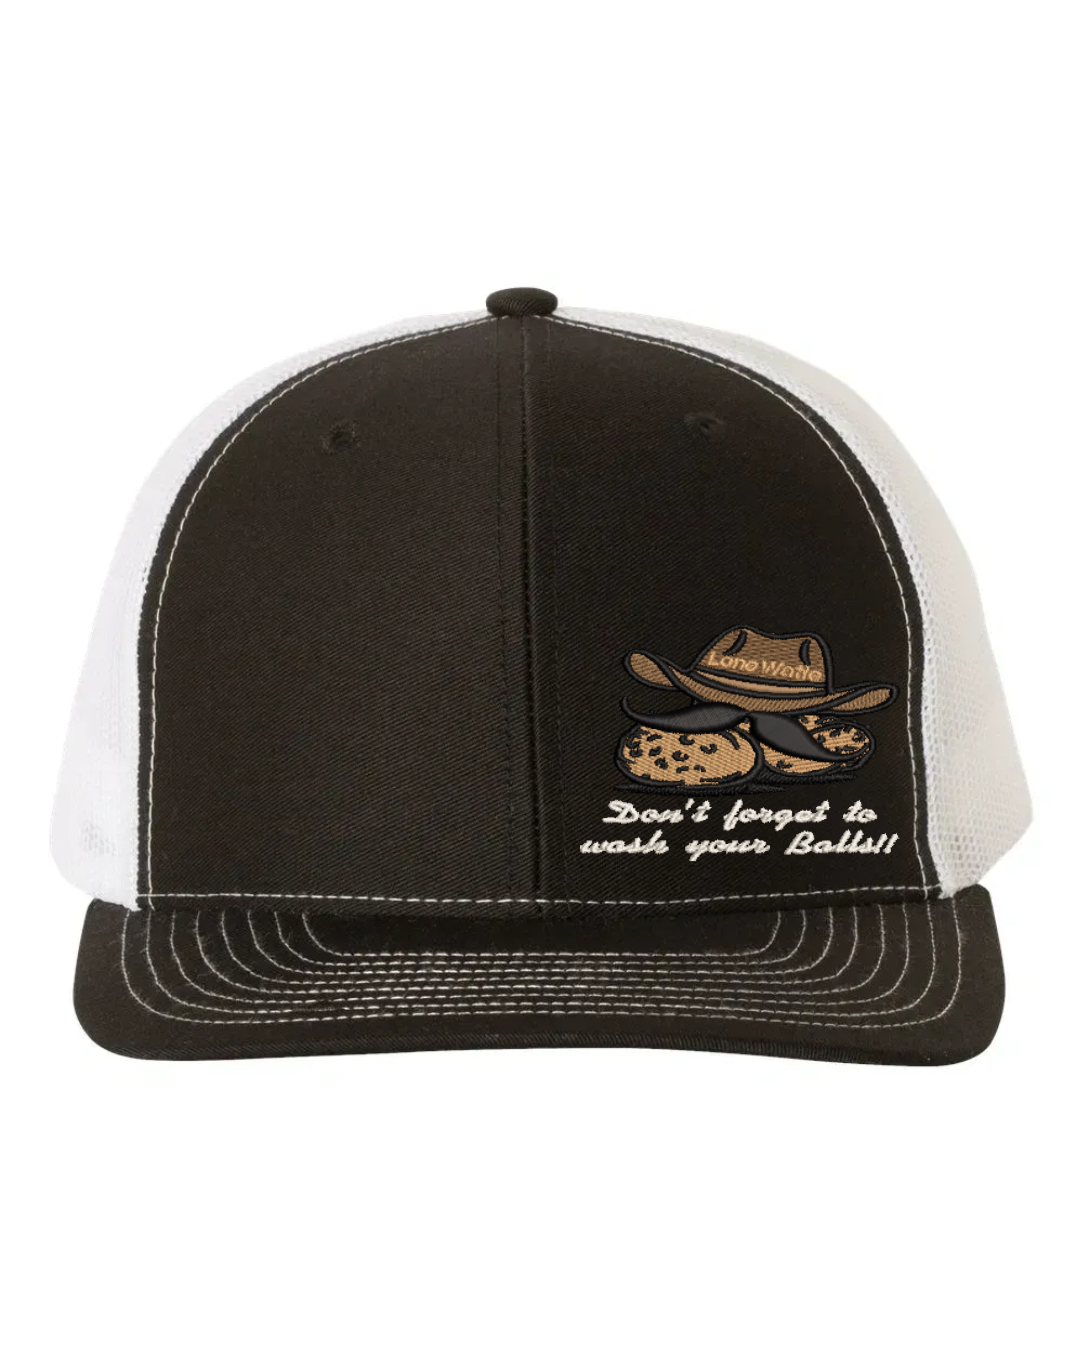 Lone Watie Embroidered Richardson 112 Trucker Hat With Slogan